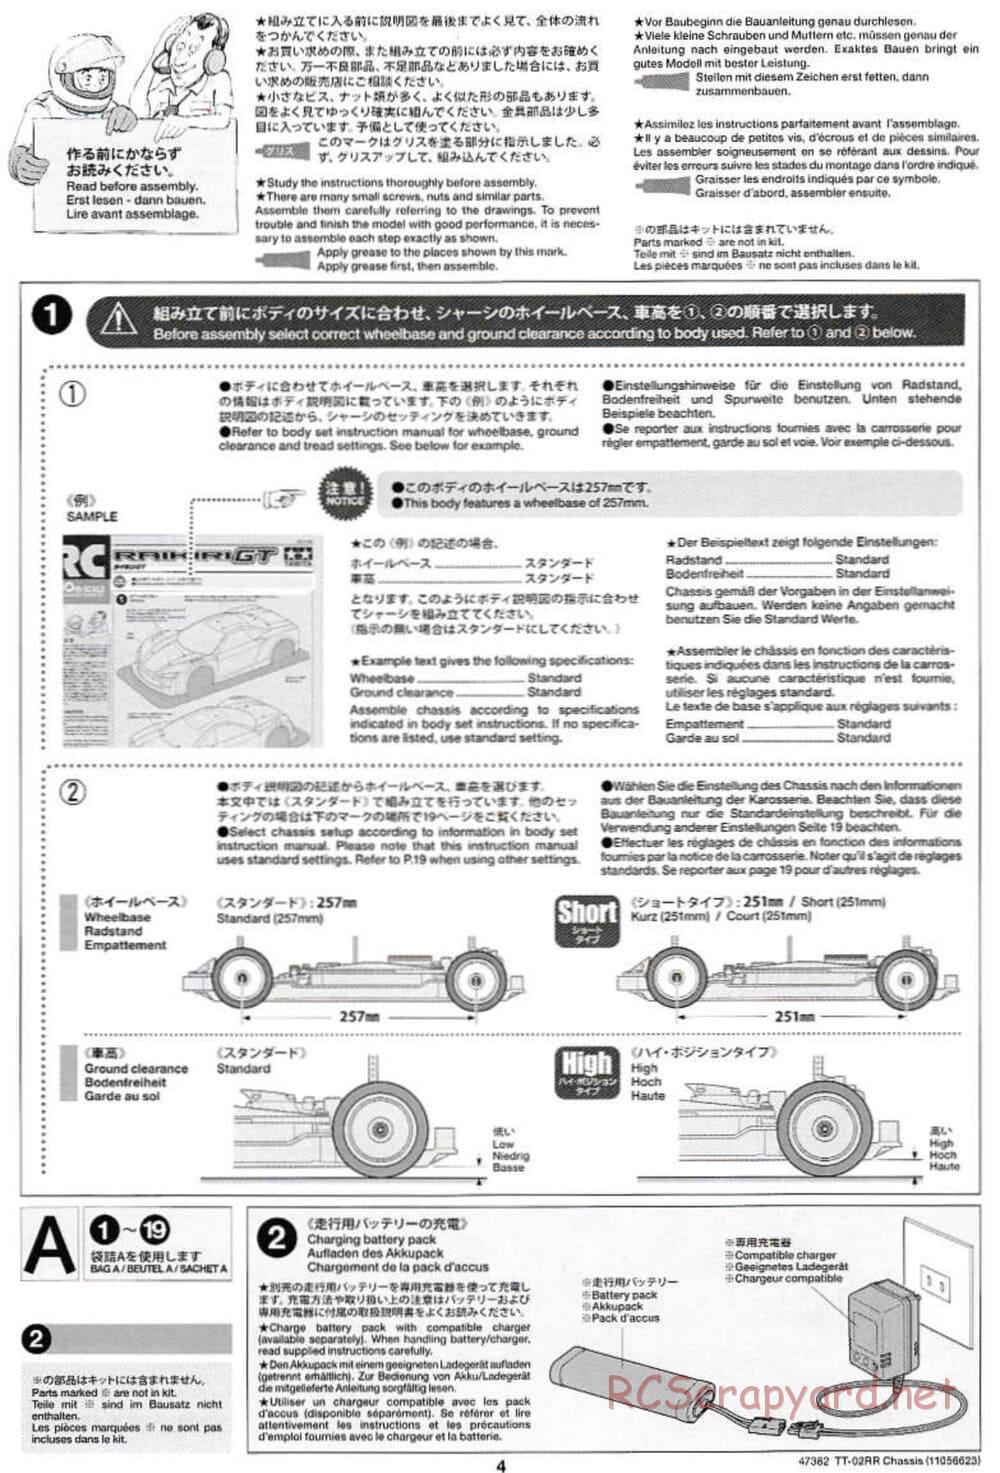 Tamiya - TT-02RR Chassis - Manual - Page 4